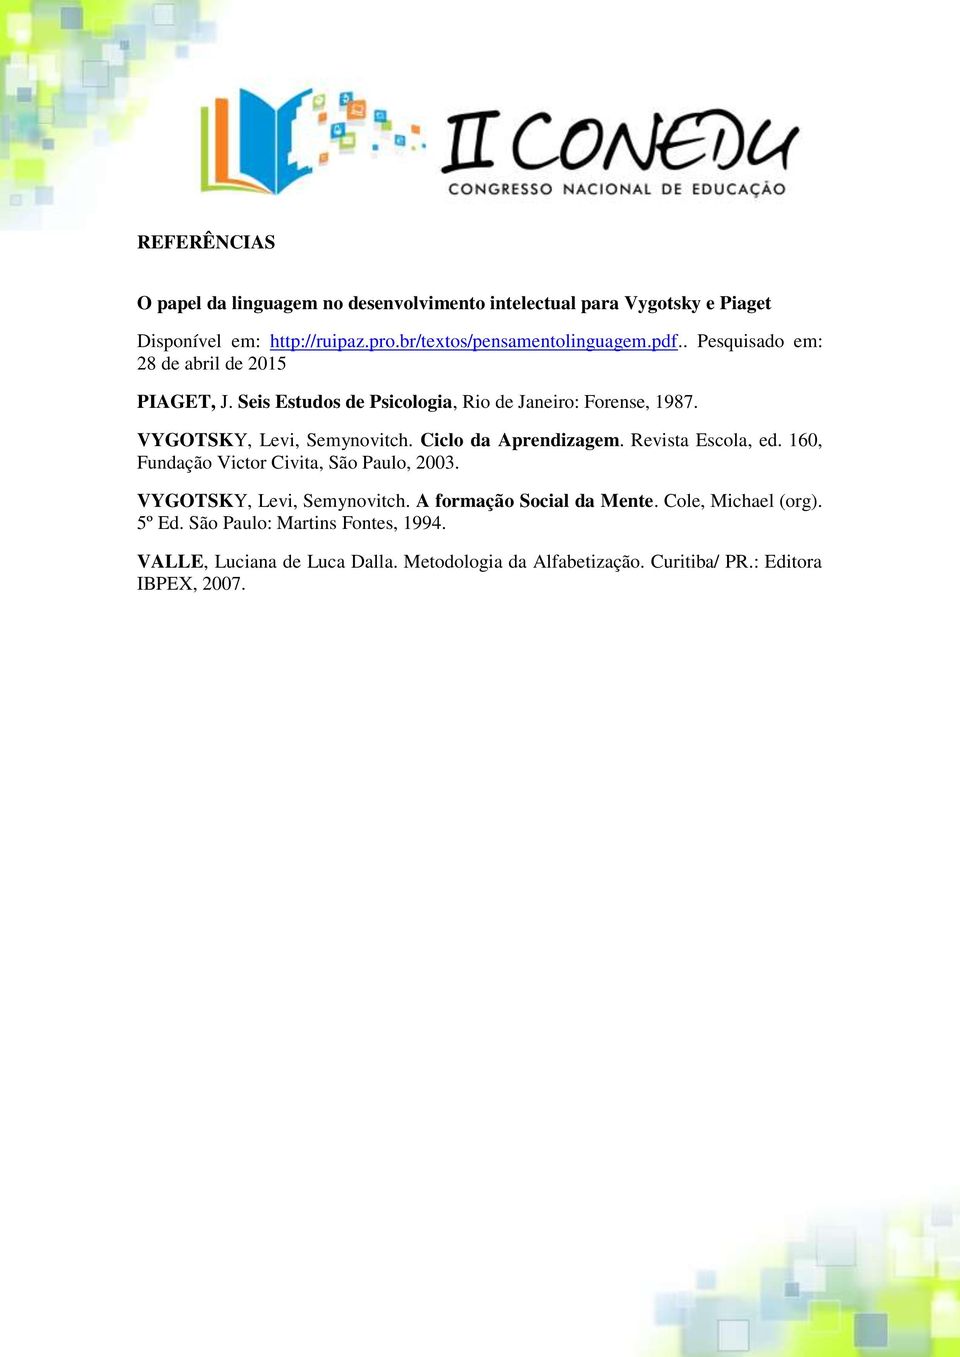 VYGOTSKY, Levi, Semynovitch. Ciclo da Aprendizagem. Revista Escola, ed. 160, Fundação Victor Civita, São Paulo, 2003. VYGOTSKY, Levi, Semynovitch.